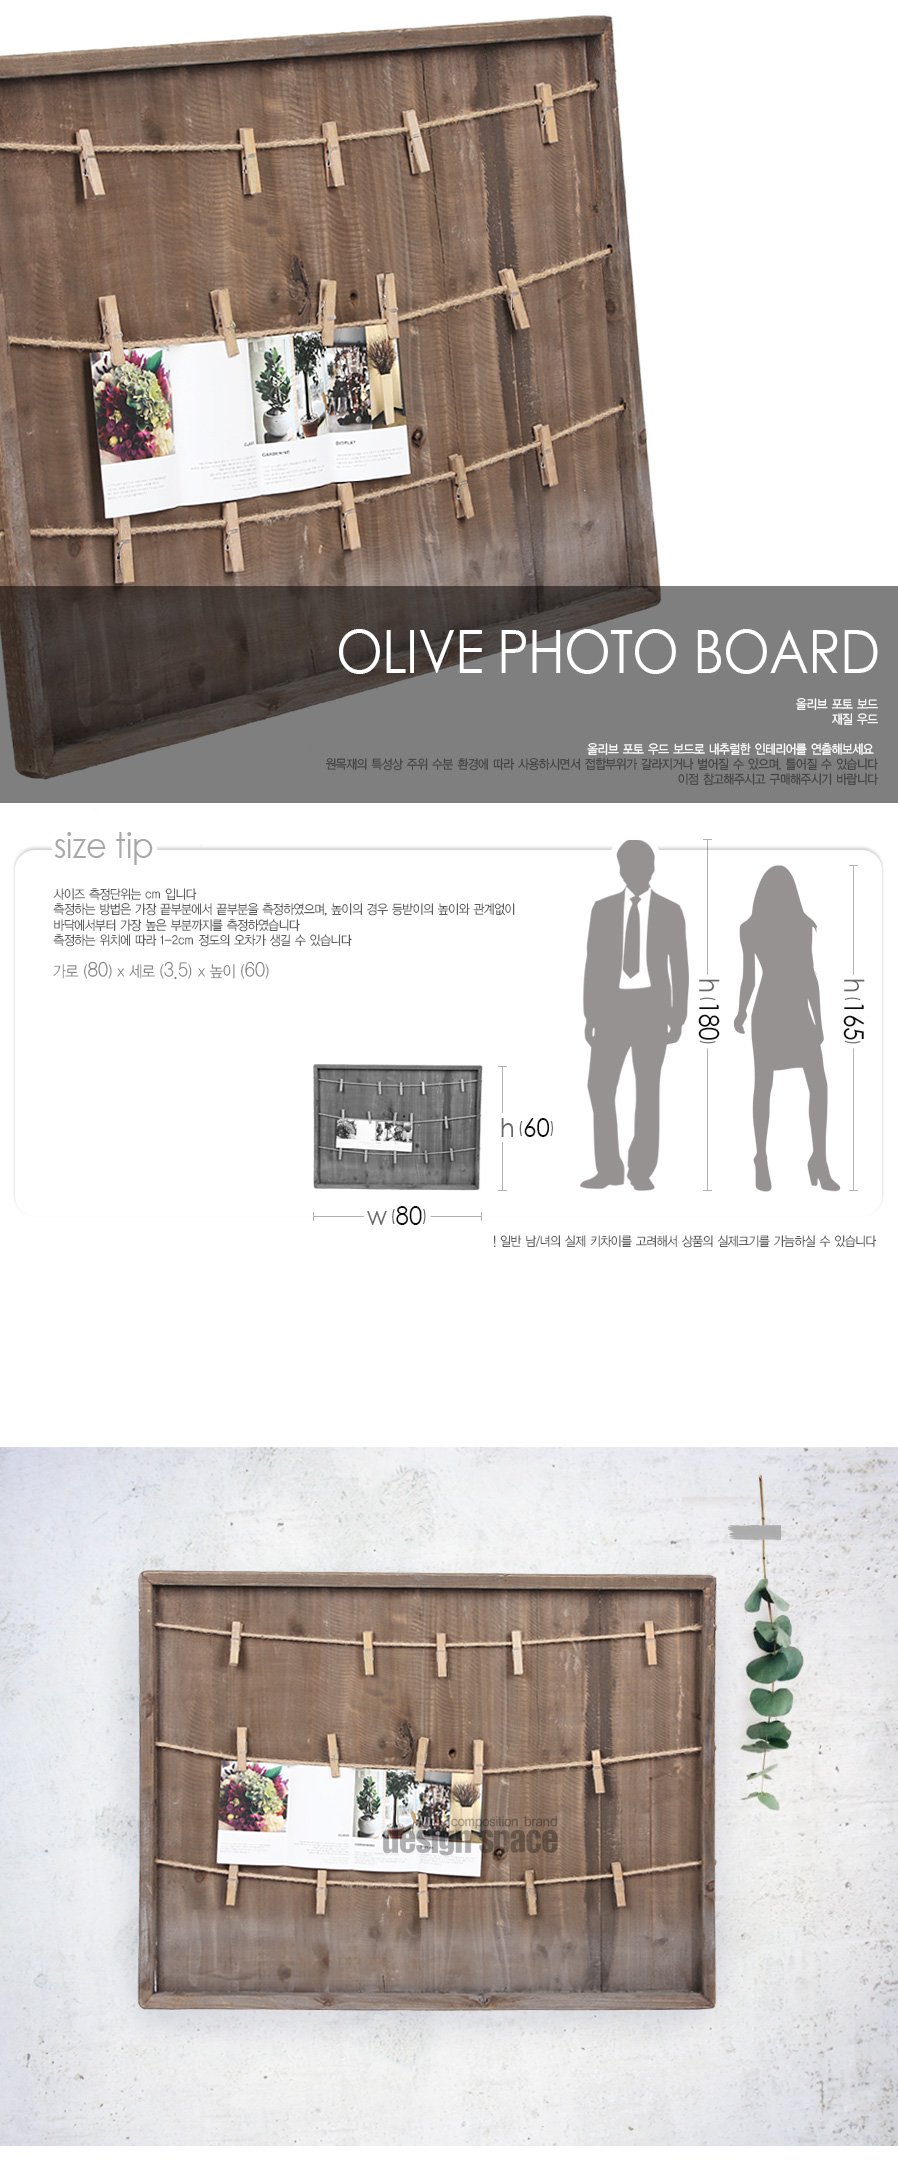 olive-photo-board_01.jpg